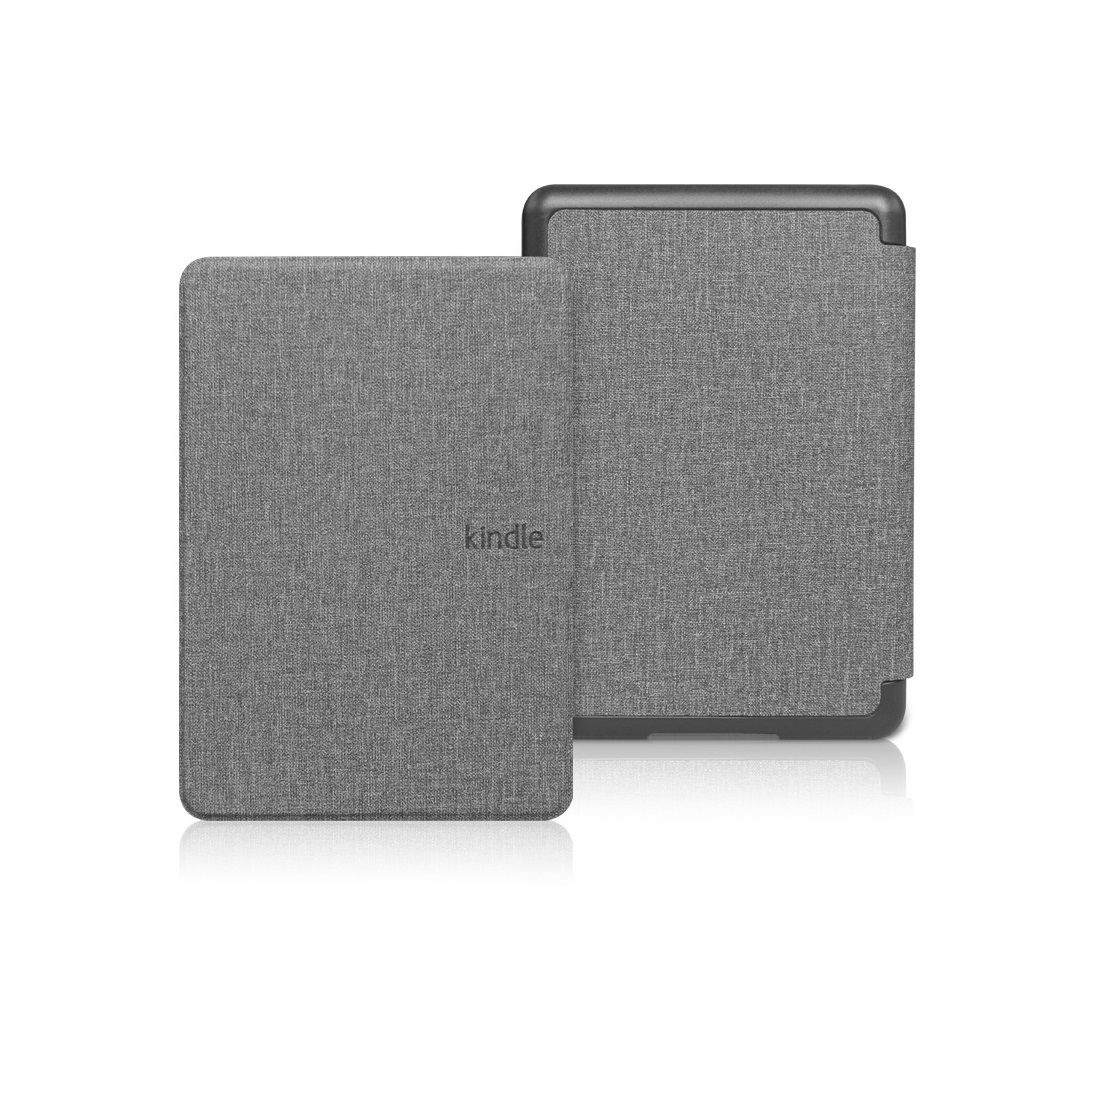 Hình ảnh Bao da Cover cho Kindle Paperwhite 5 - Mẫu vân vải, ốp sau PVC - Smartcover tự động tắt mở